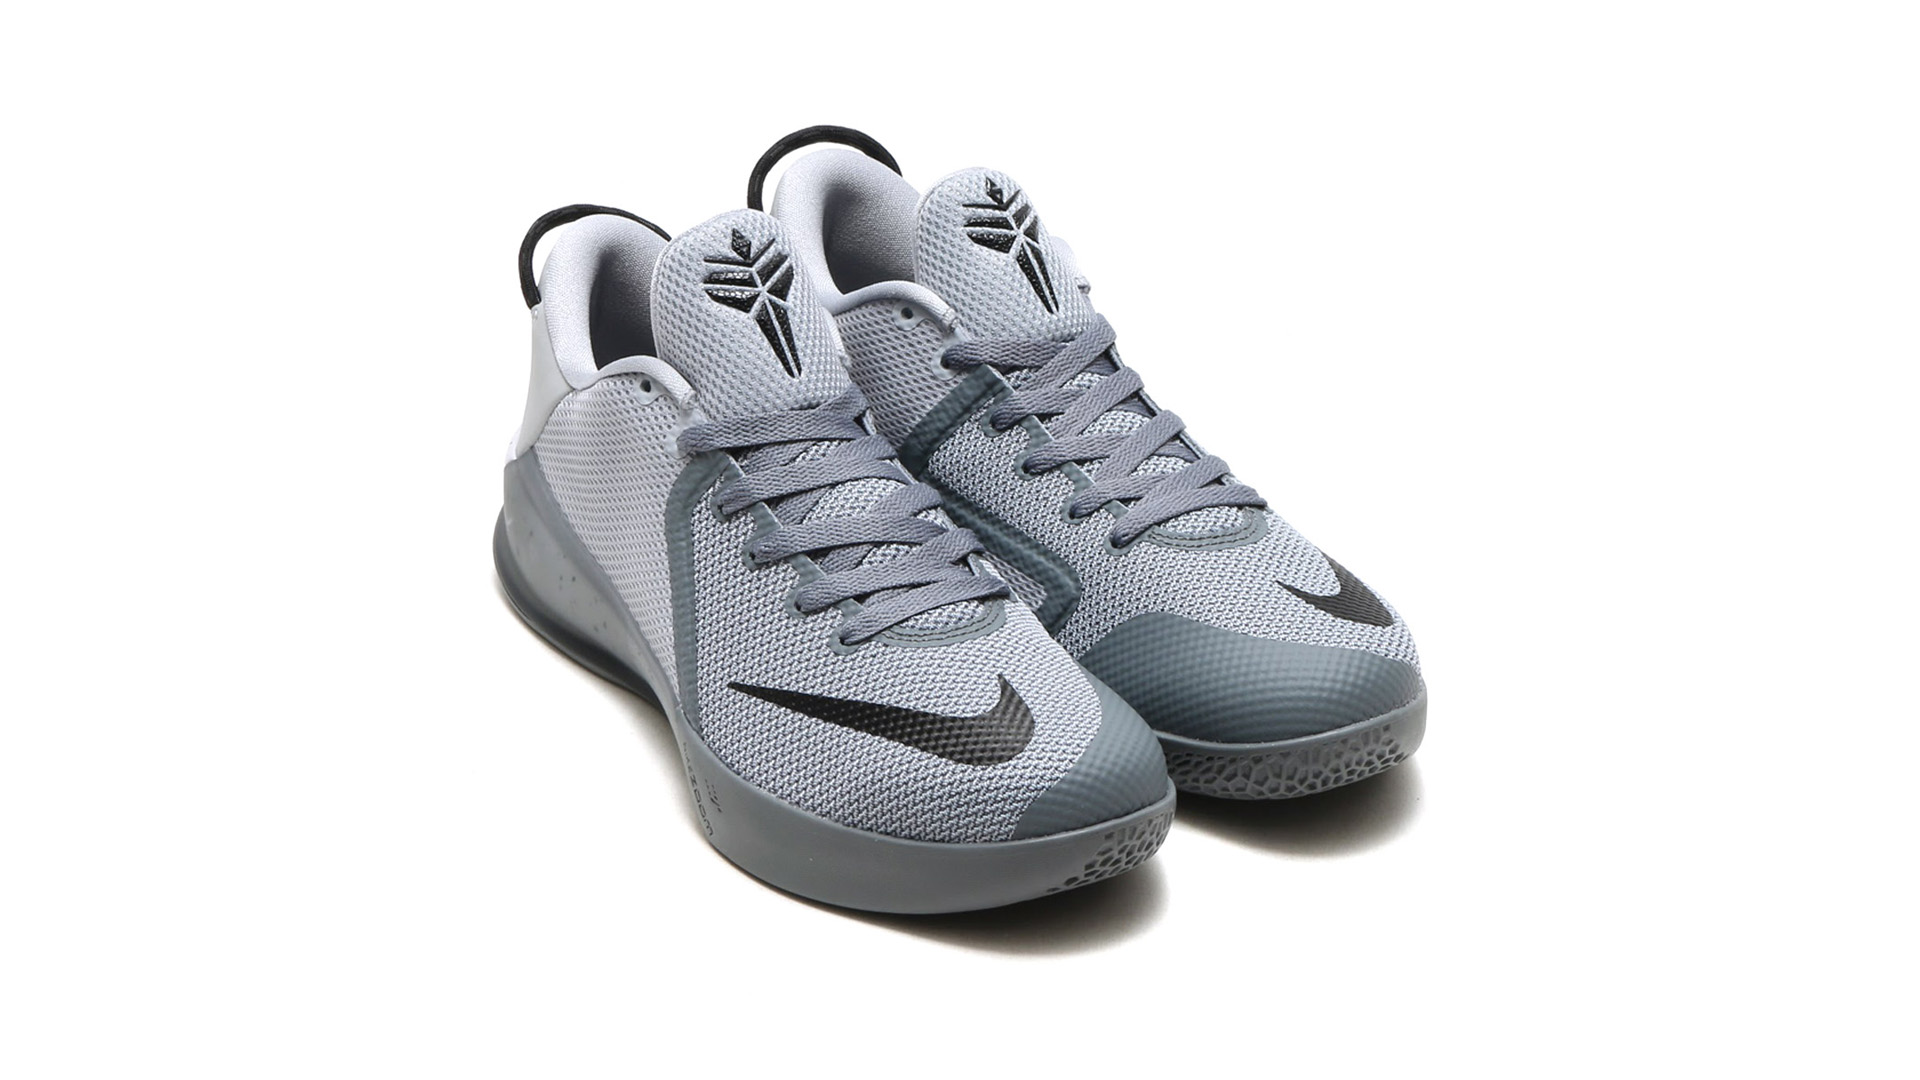 construcción naval microondas Transición Check Out the Nike Kobe Venomenon 6 in 'Cool Grey' - WearTesters